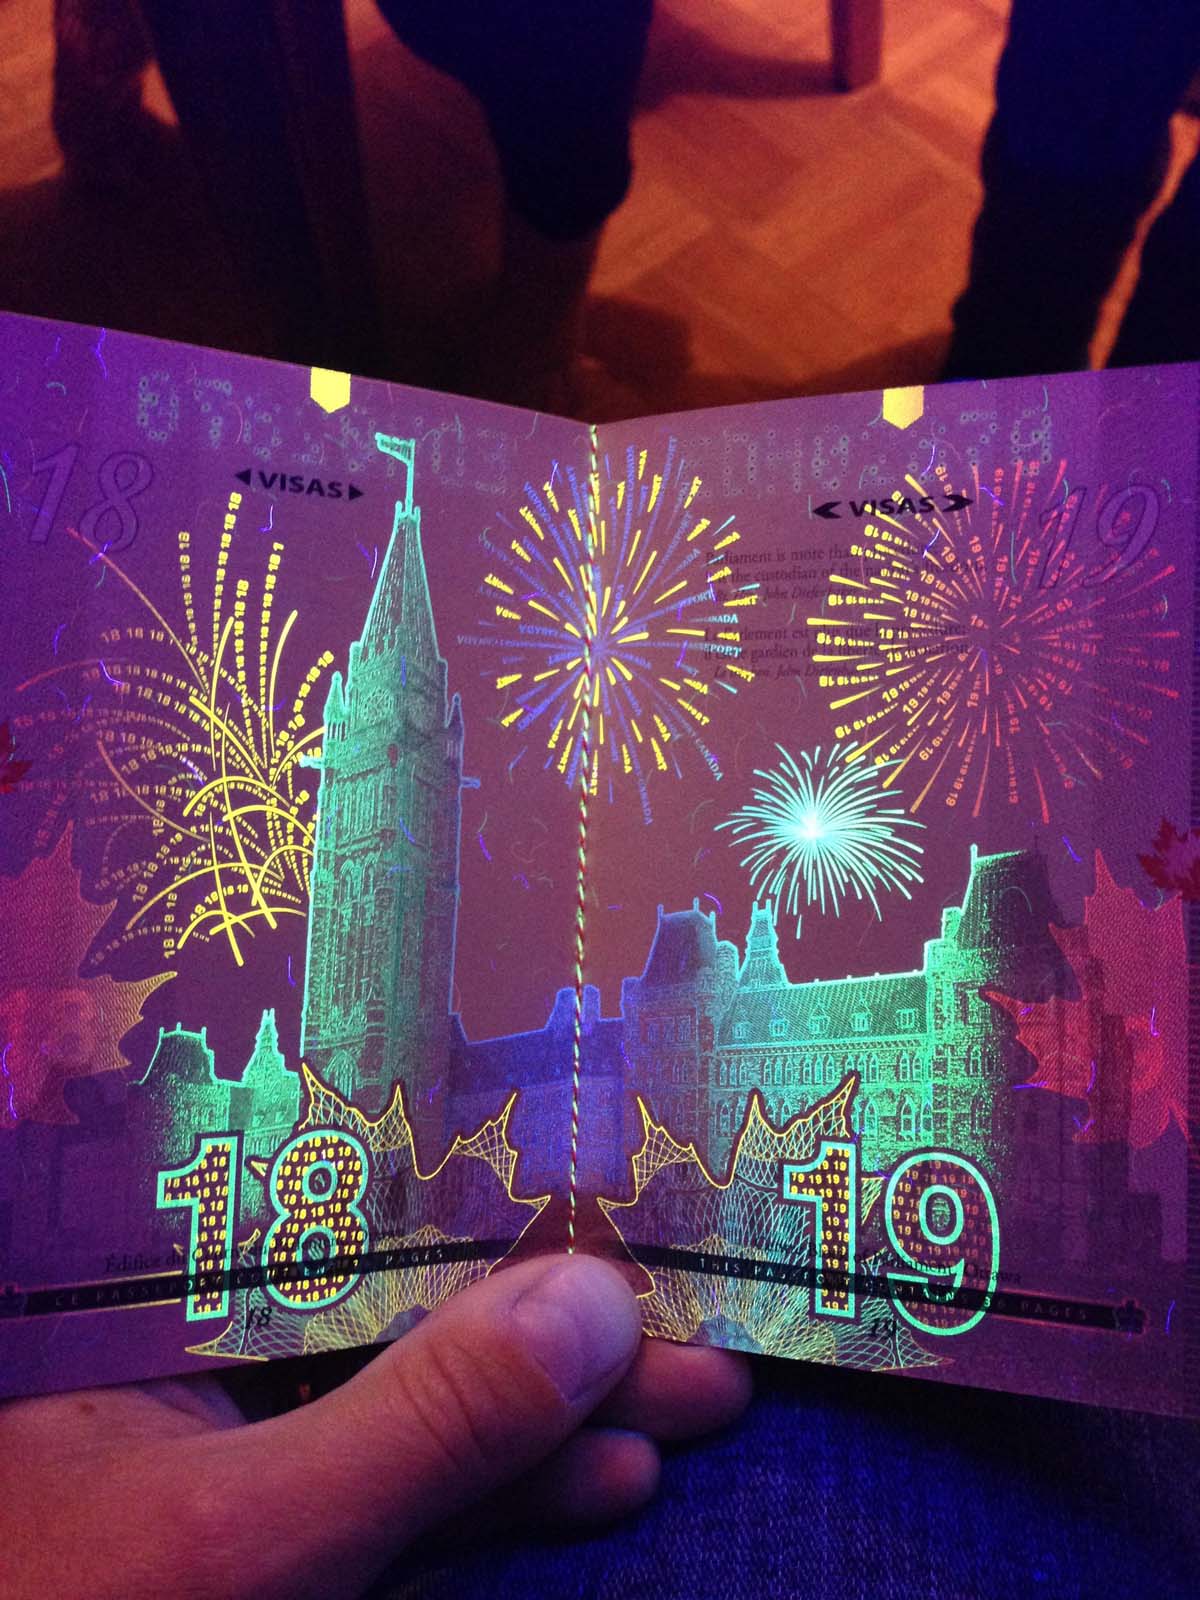 Au Canada, le nouveau passeport réagit à la lumière noire